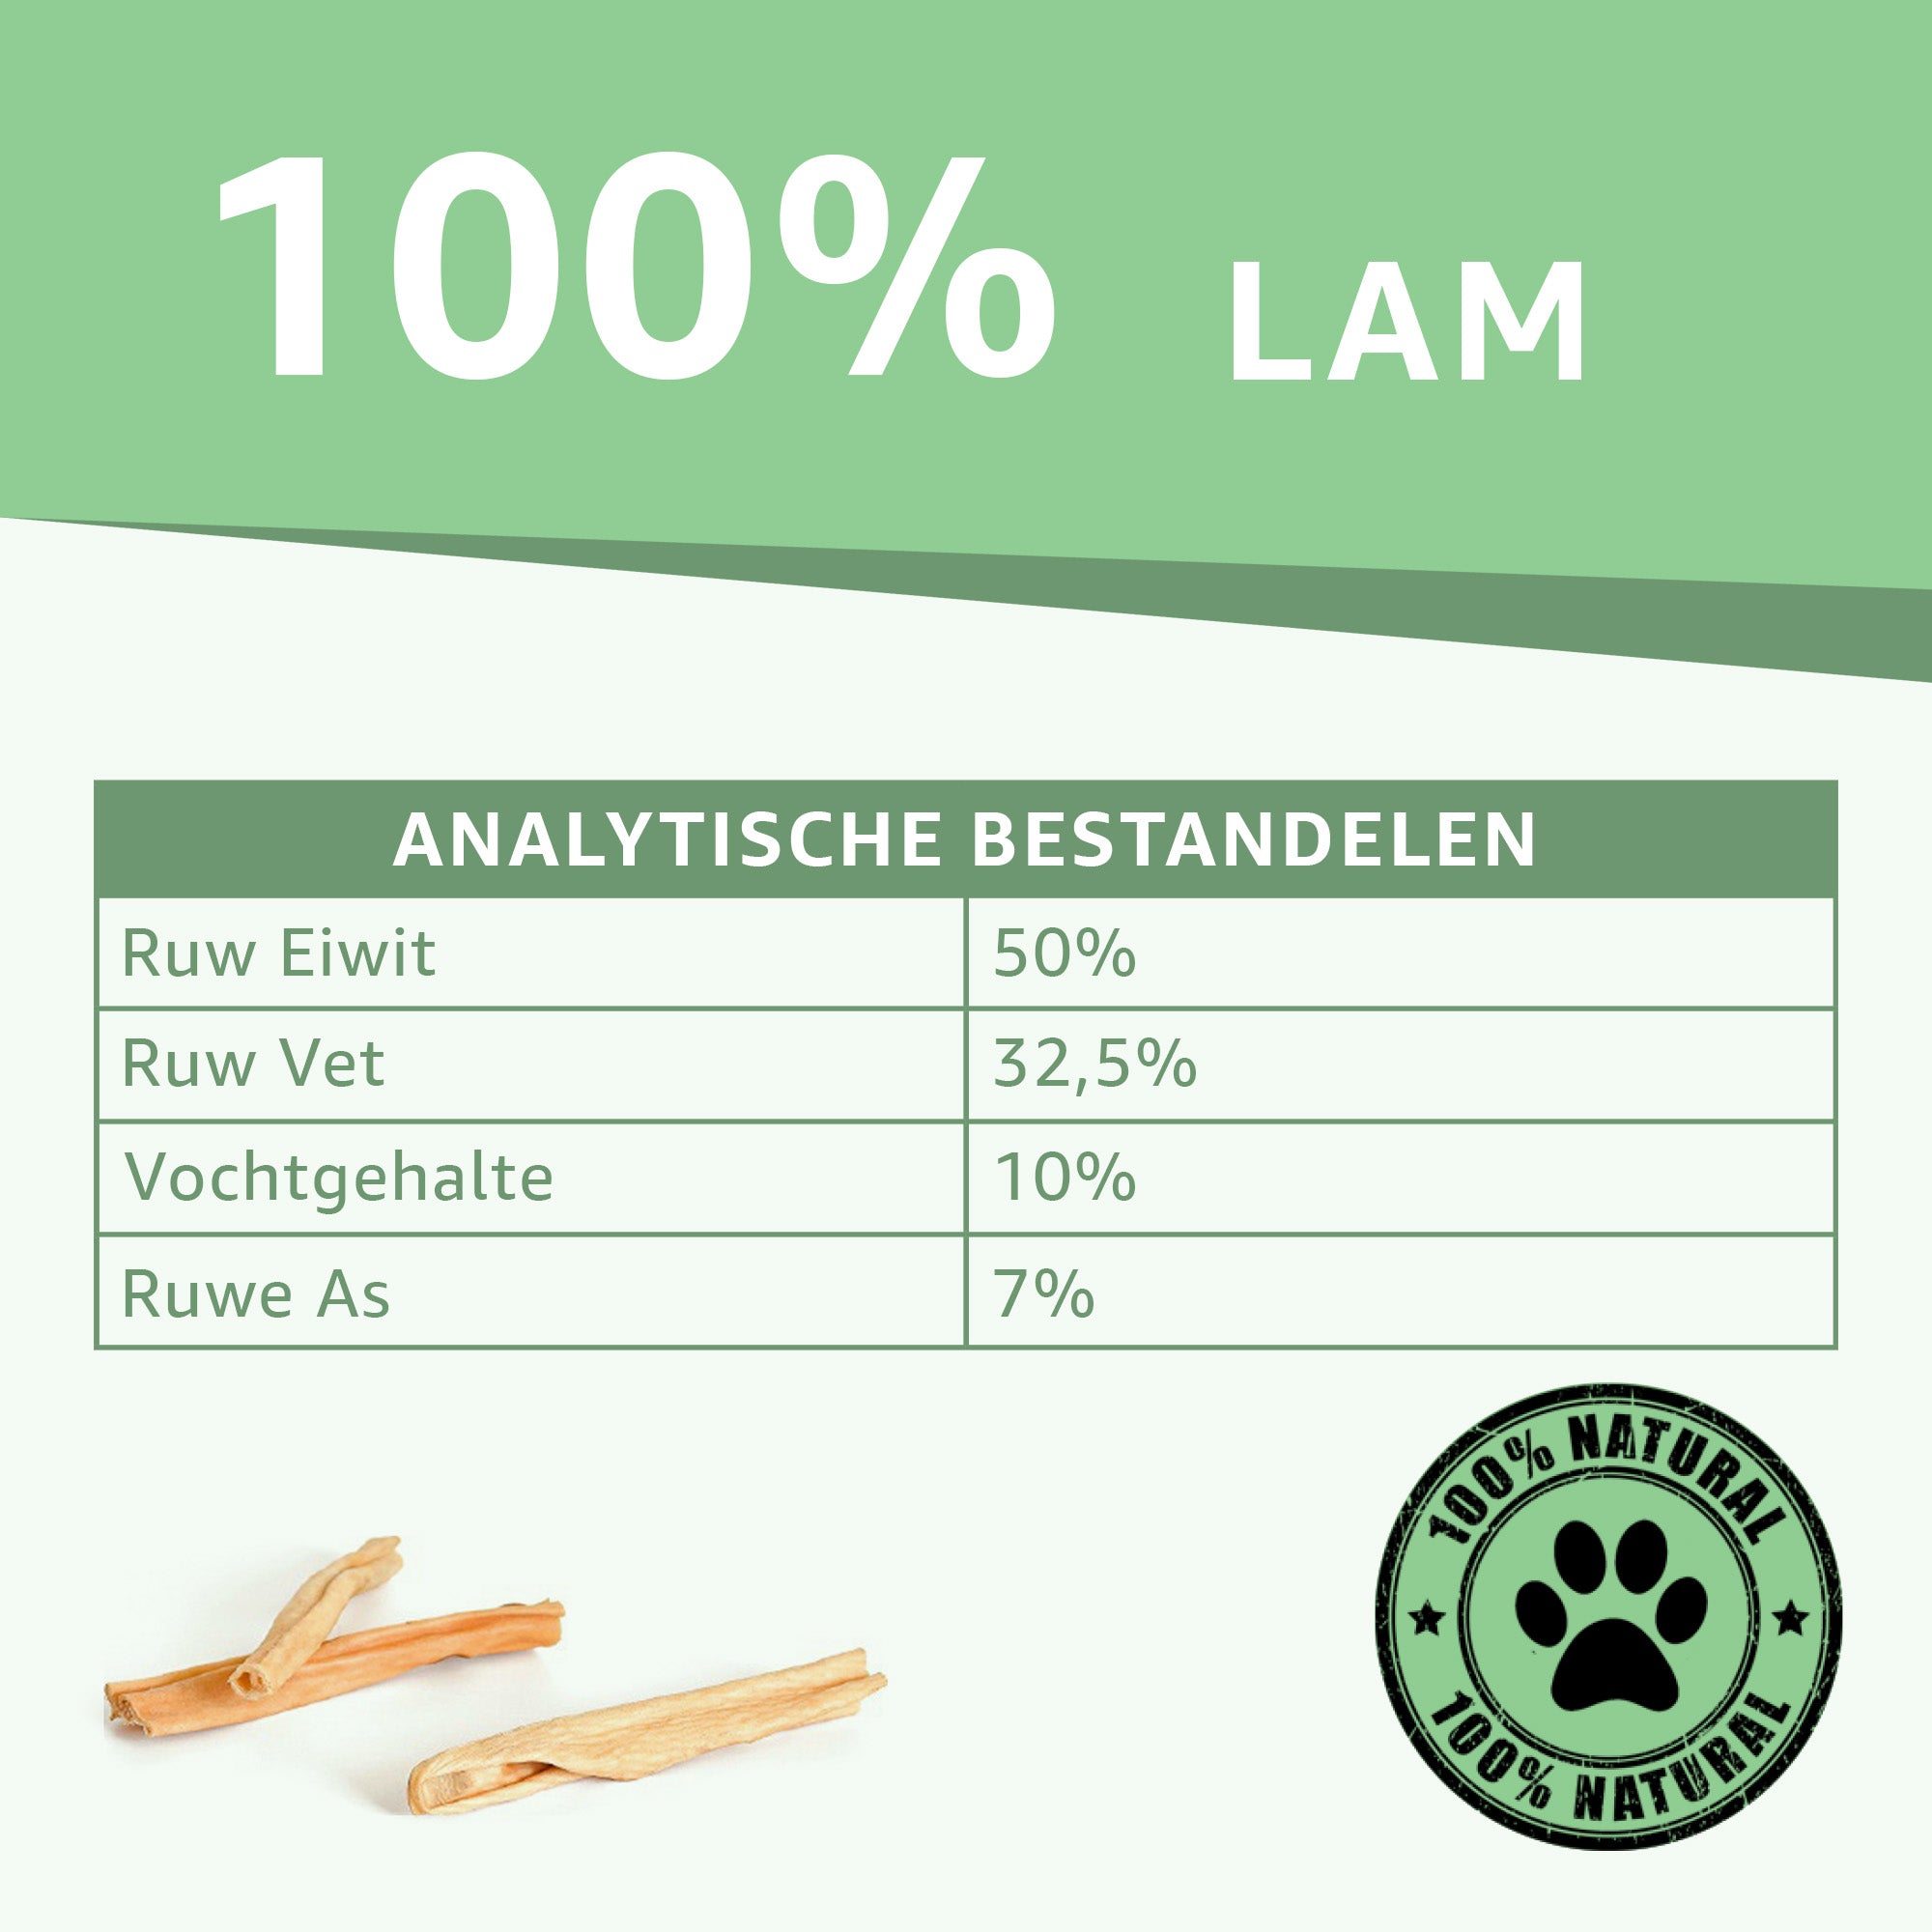 "Analytische Bestandsdelen Lamshuid Snacks: Voedingswaarde en samenstelling onthuld. Hoog eiwitgehalte, zonder toegevoegde stoffen. De ideale keuze voor gezonde en smakelijke hondensnacks."